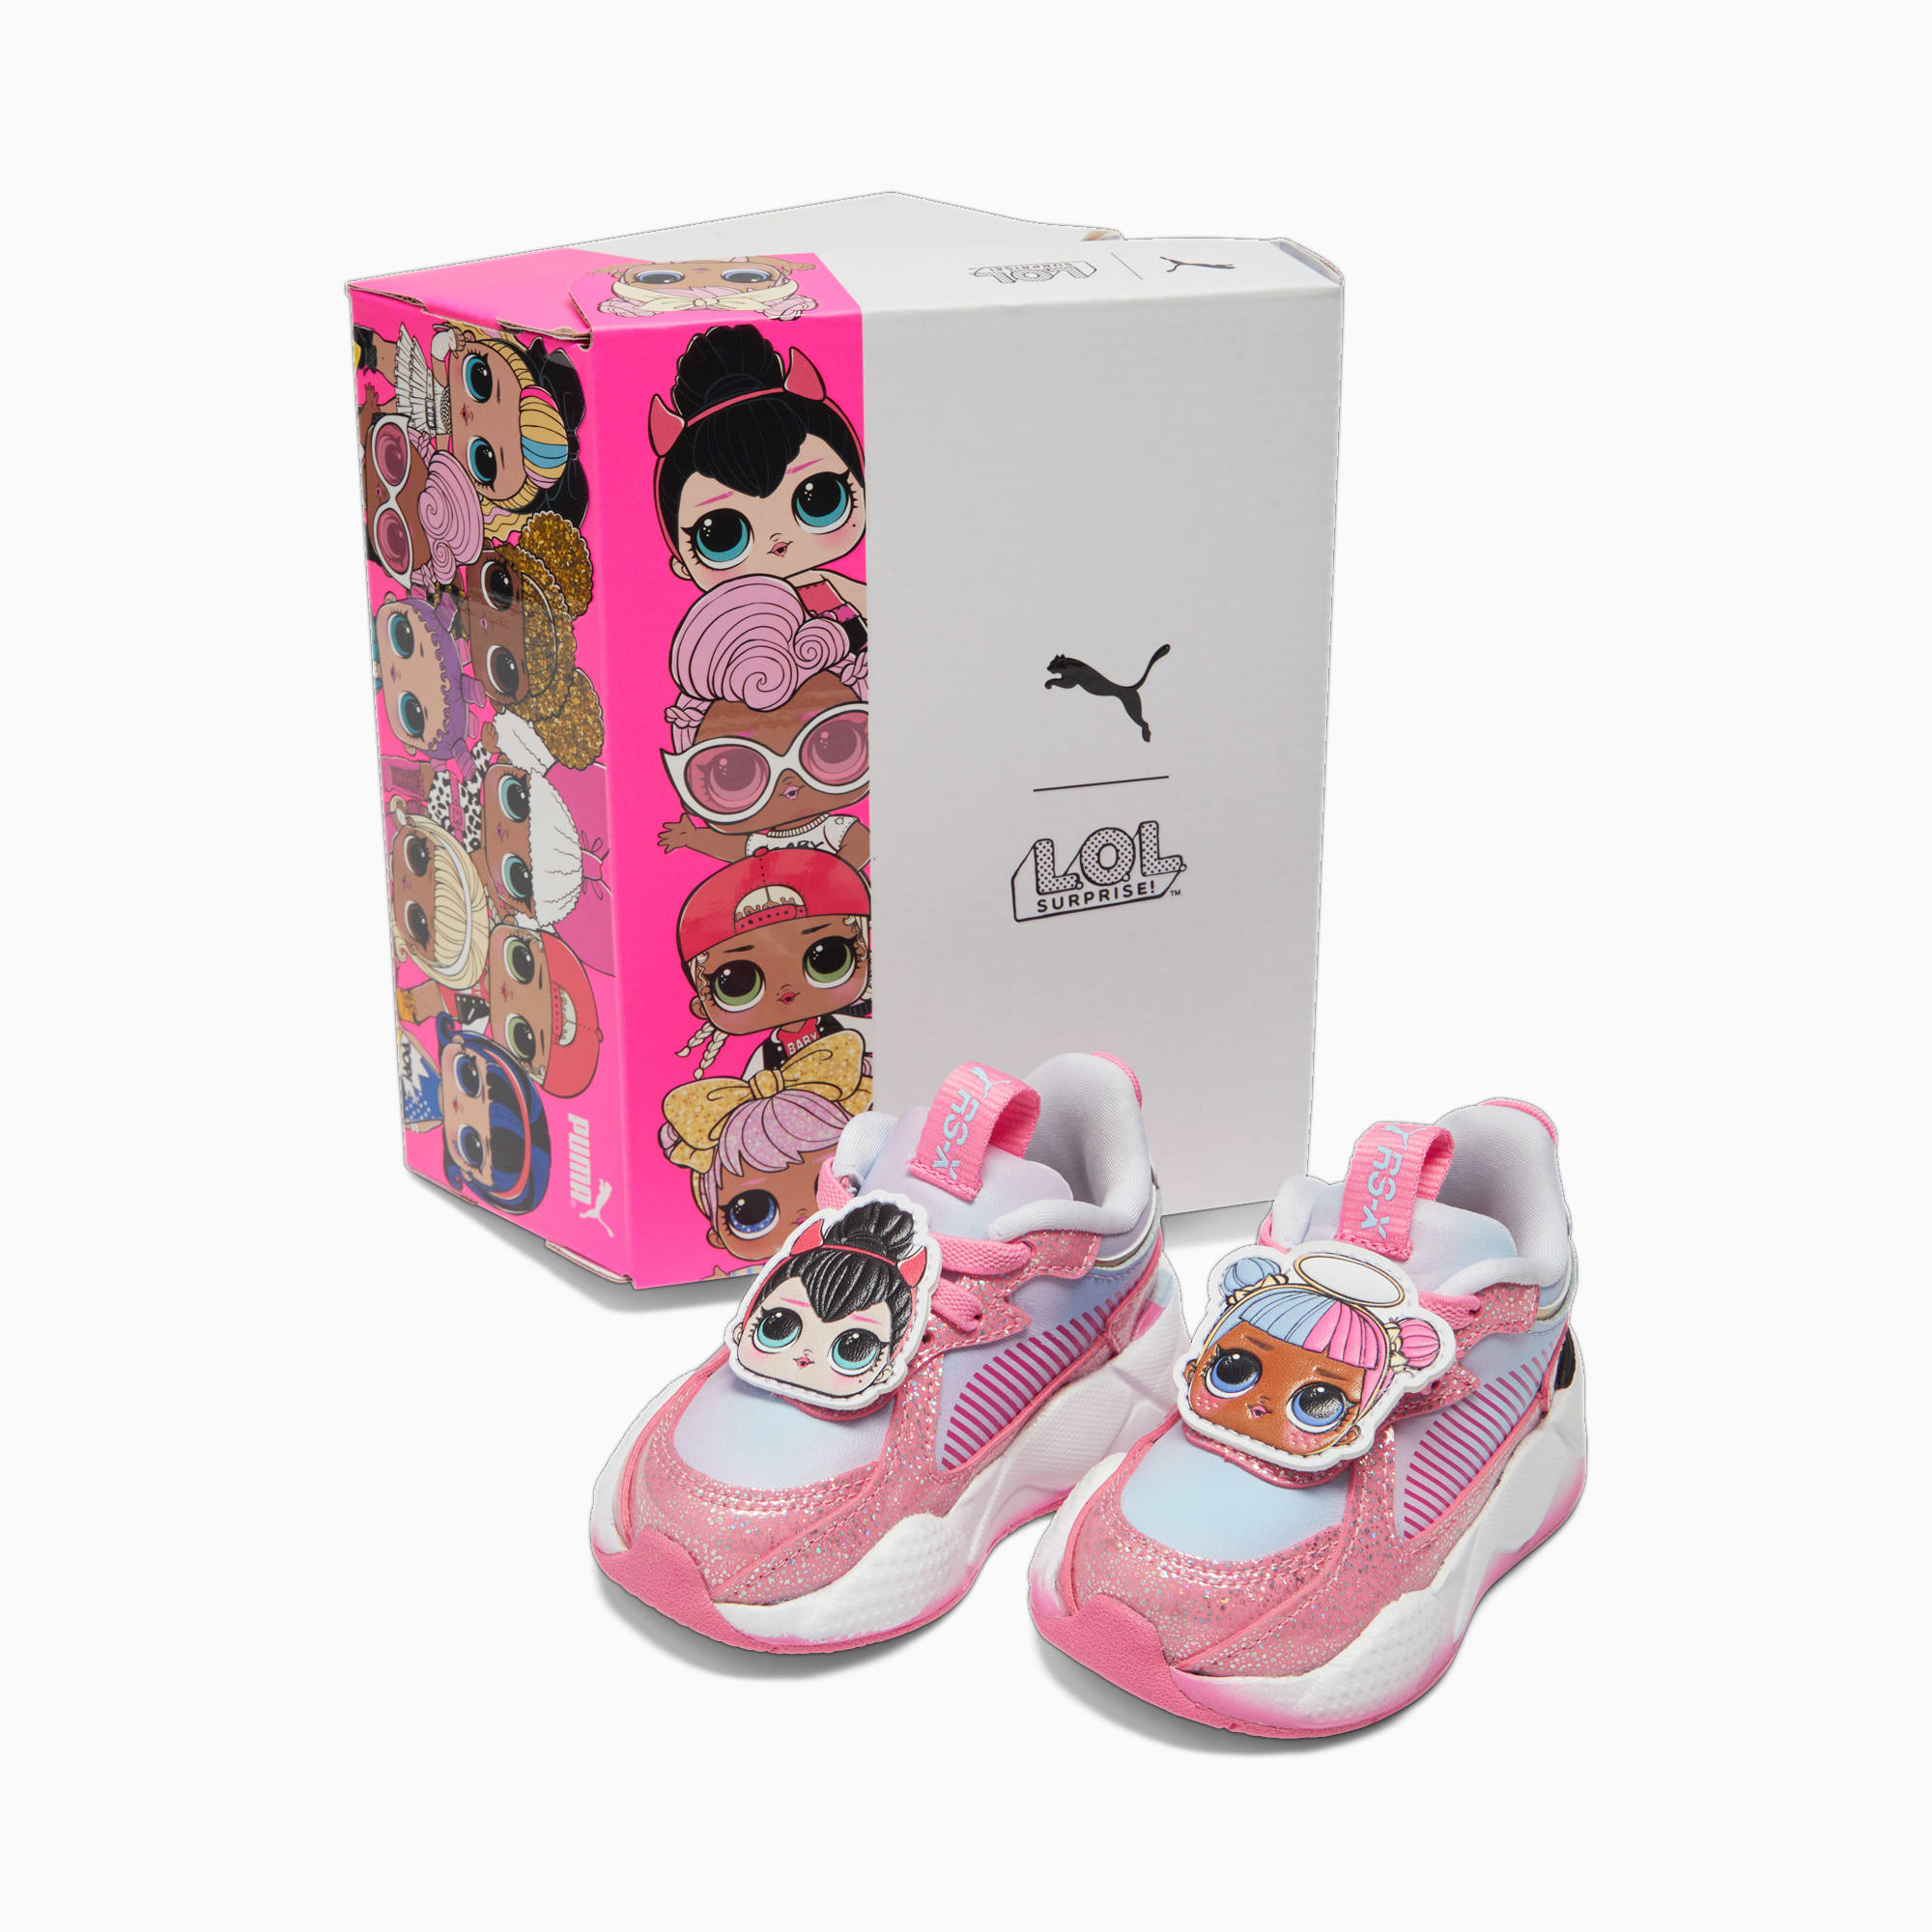 Scarpe Sneaker PUMA X LOL SURPRISE RS-X Per Bimba Ai Primi Passi, Rosa/Bianco/Argento/Altro